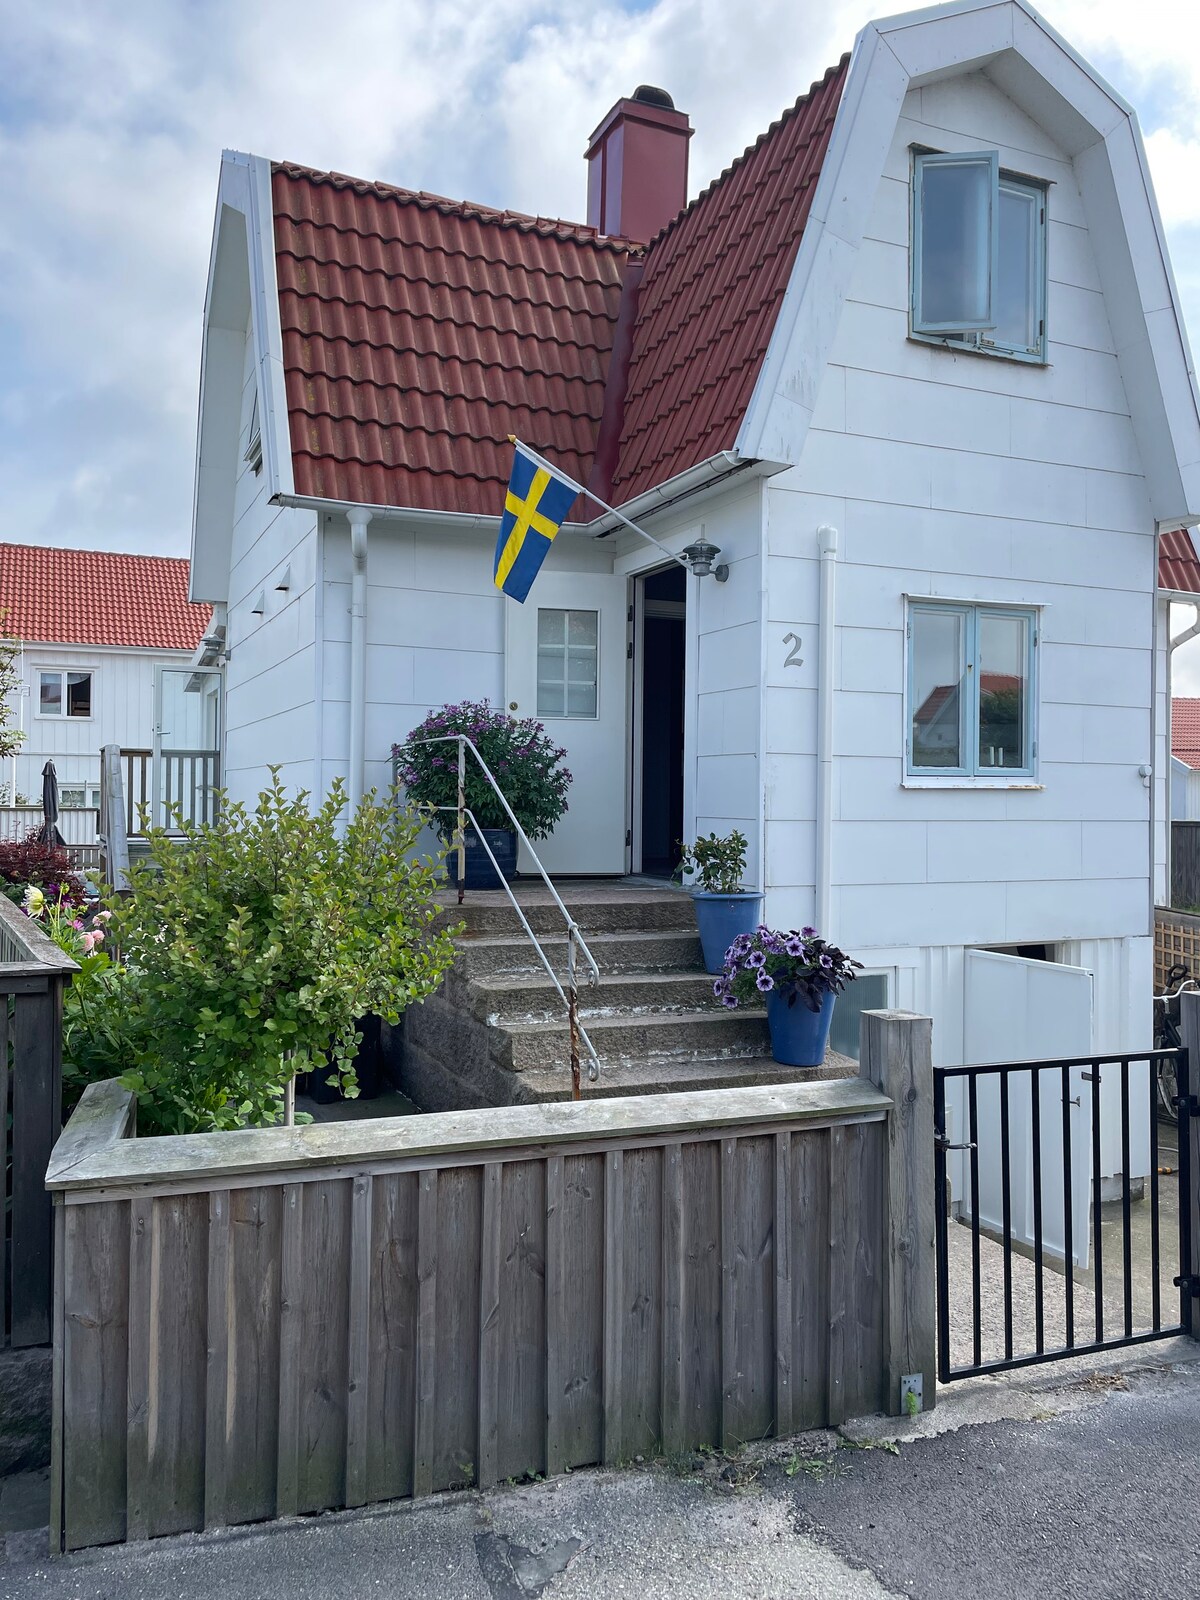 大海旁Väjern的舒适群岛房屋。